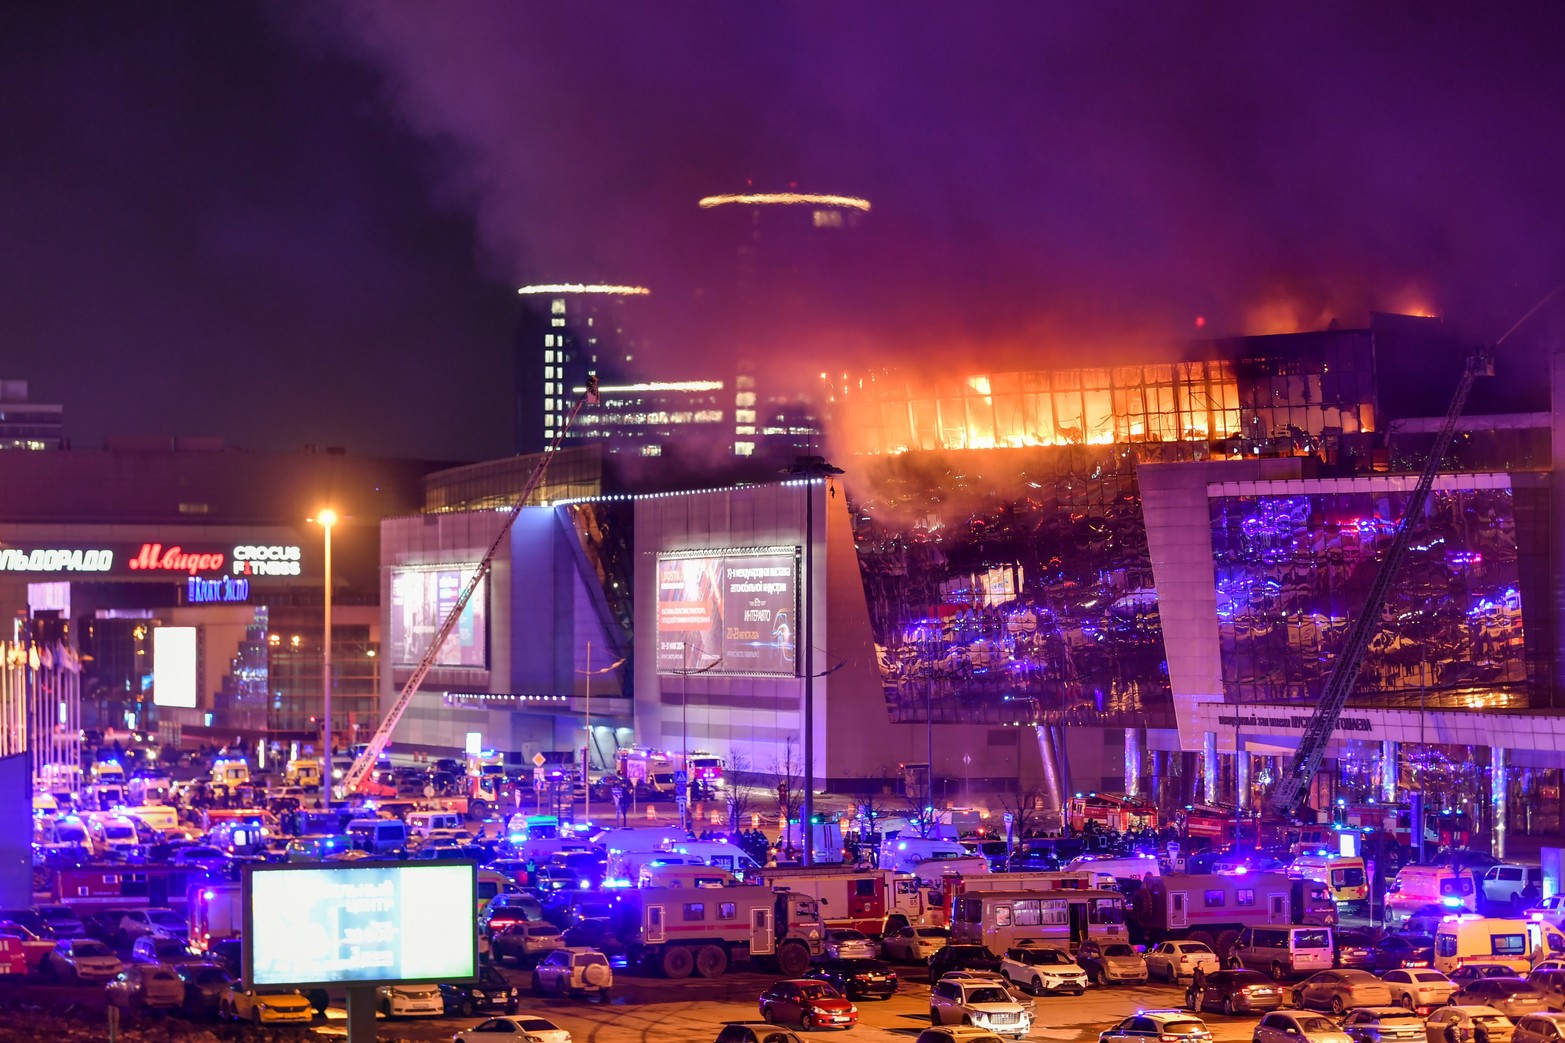 Humo del fuego se eleva sobre la incendiada sala de conciertos Crocus después de un incidente de tiroteo. Cientos de ambulancias aguardan para rescatar heridos, en el noroeste de Moscú, Rusia. 